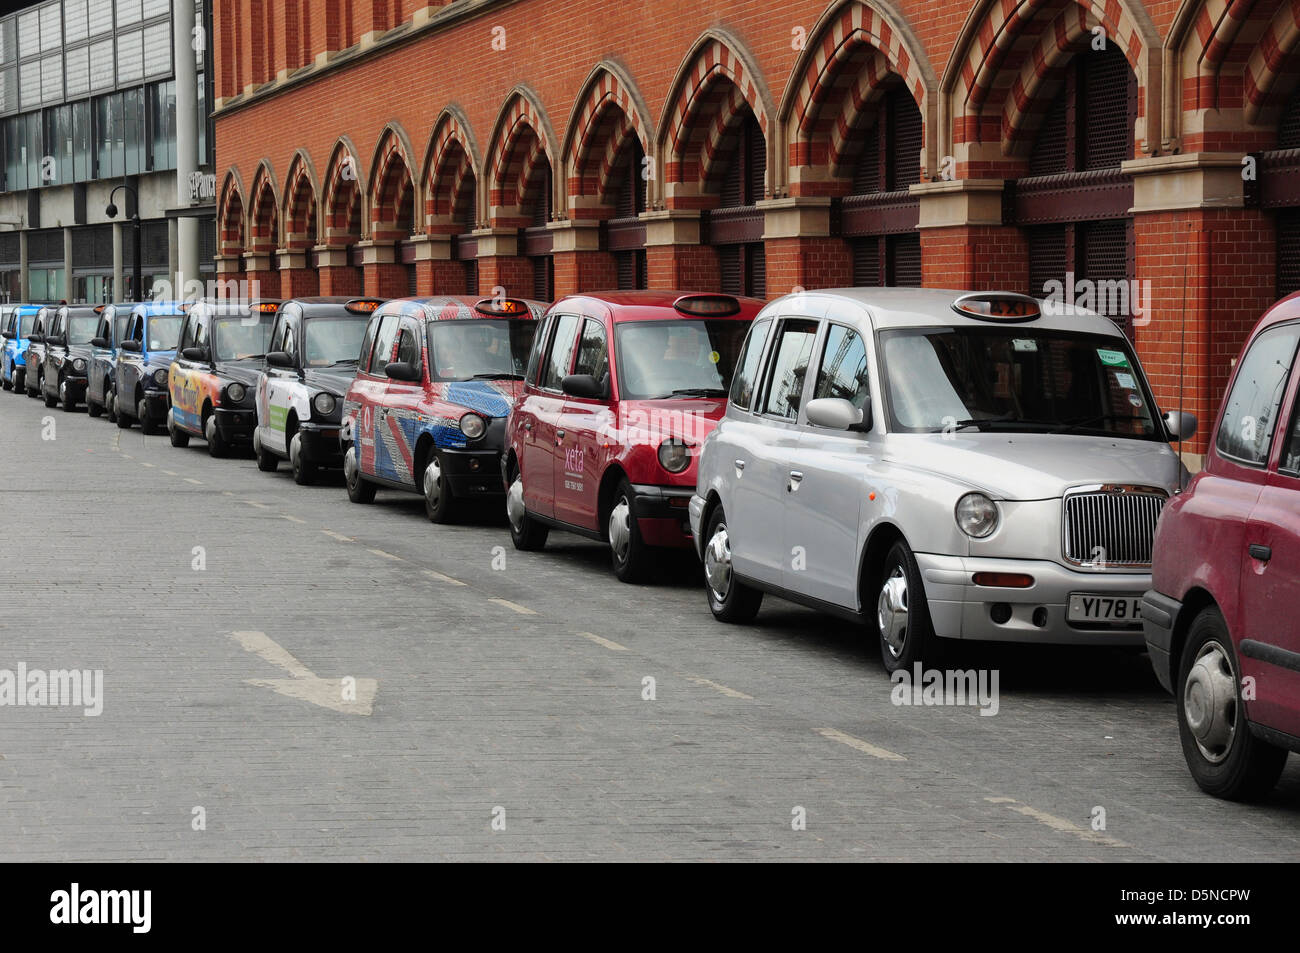 La linea di taxi sul servizio taxi fuori St Pancras stazione ferroviaria, London, England, Regno Unito Foto Stock